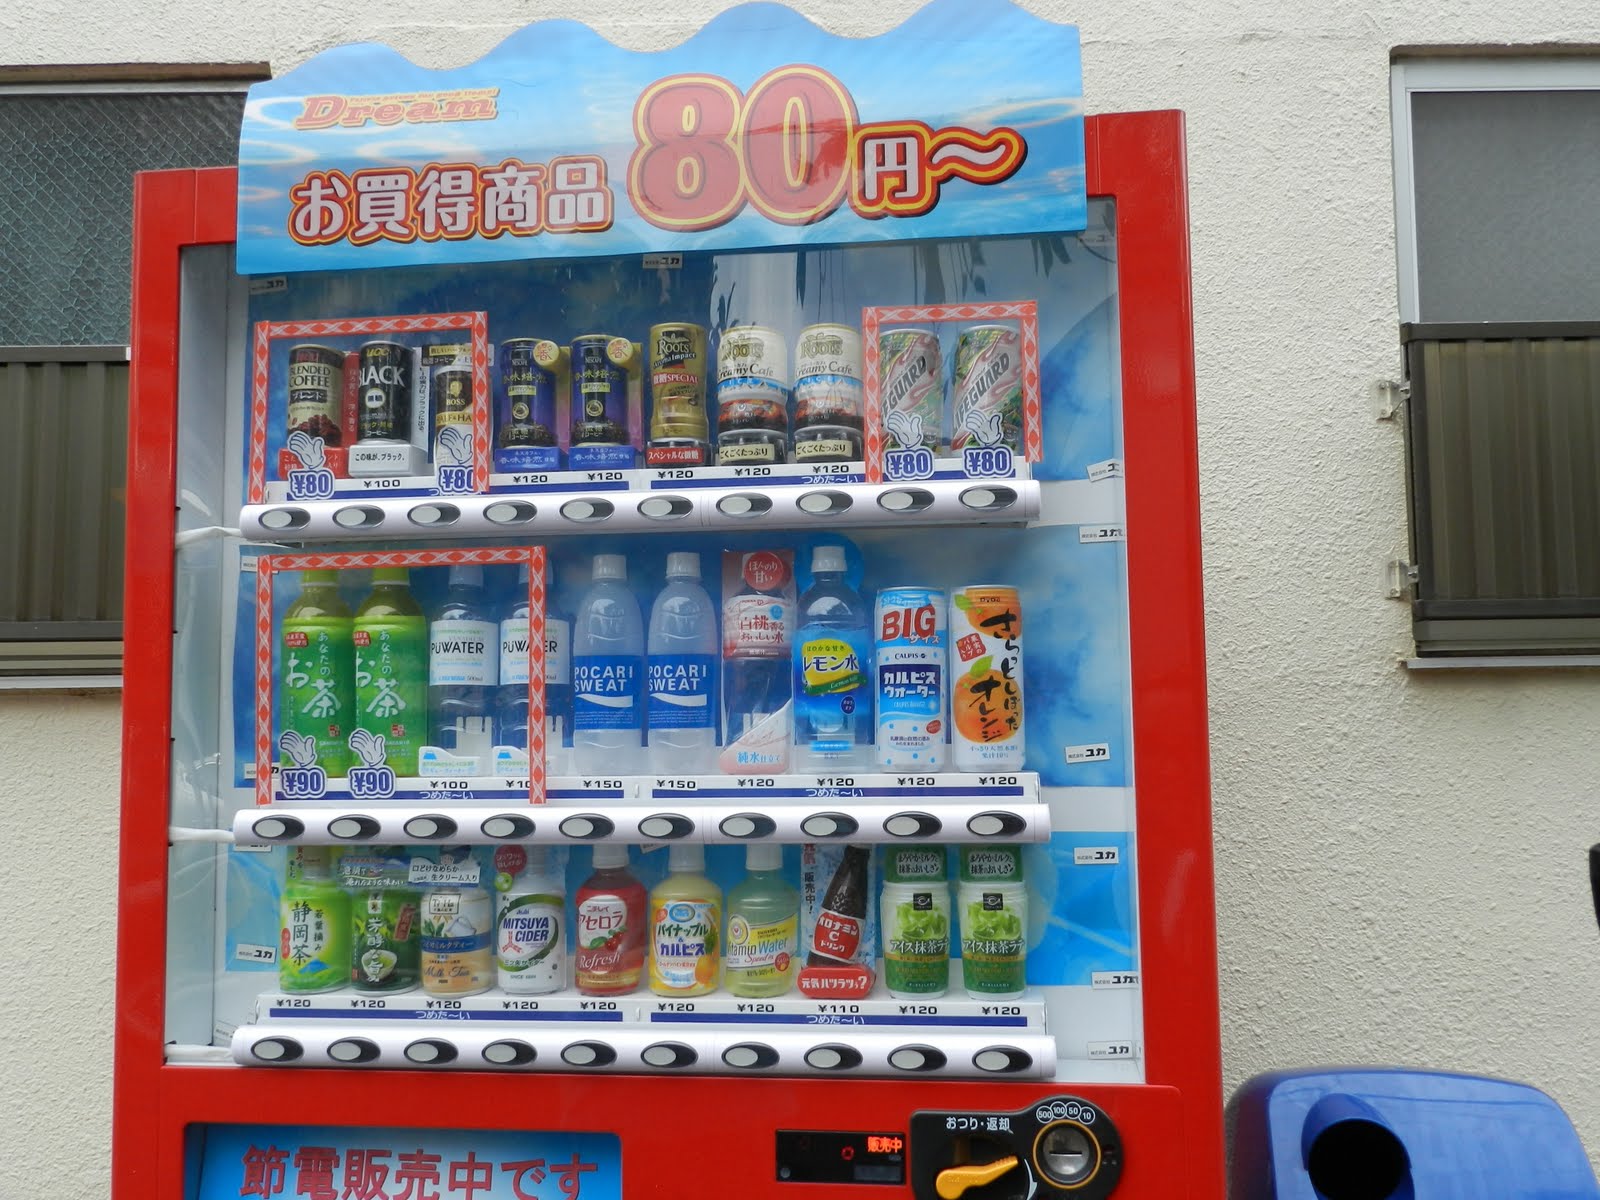 Chanchan in Japanpan: vending machines